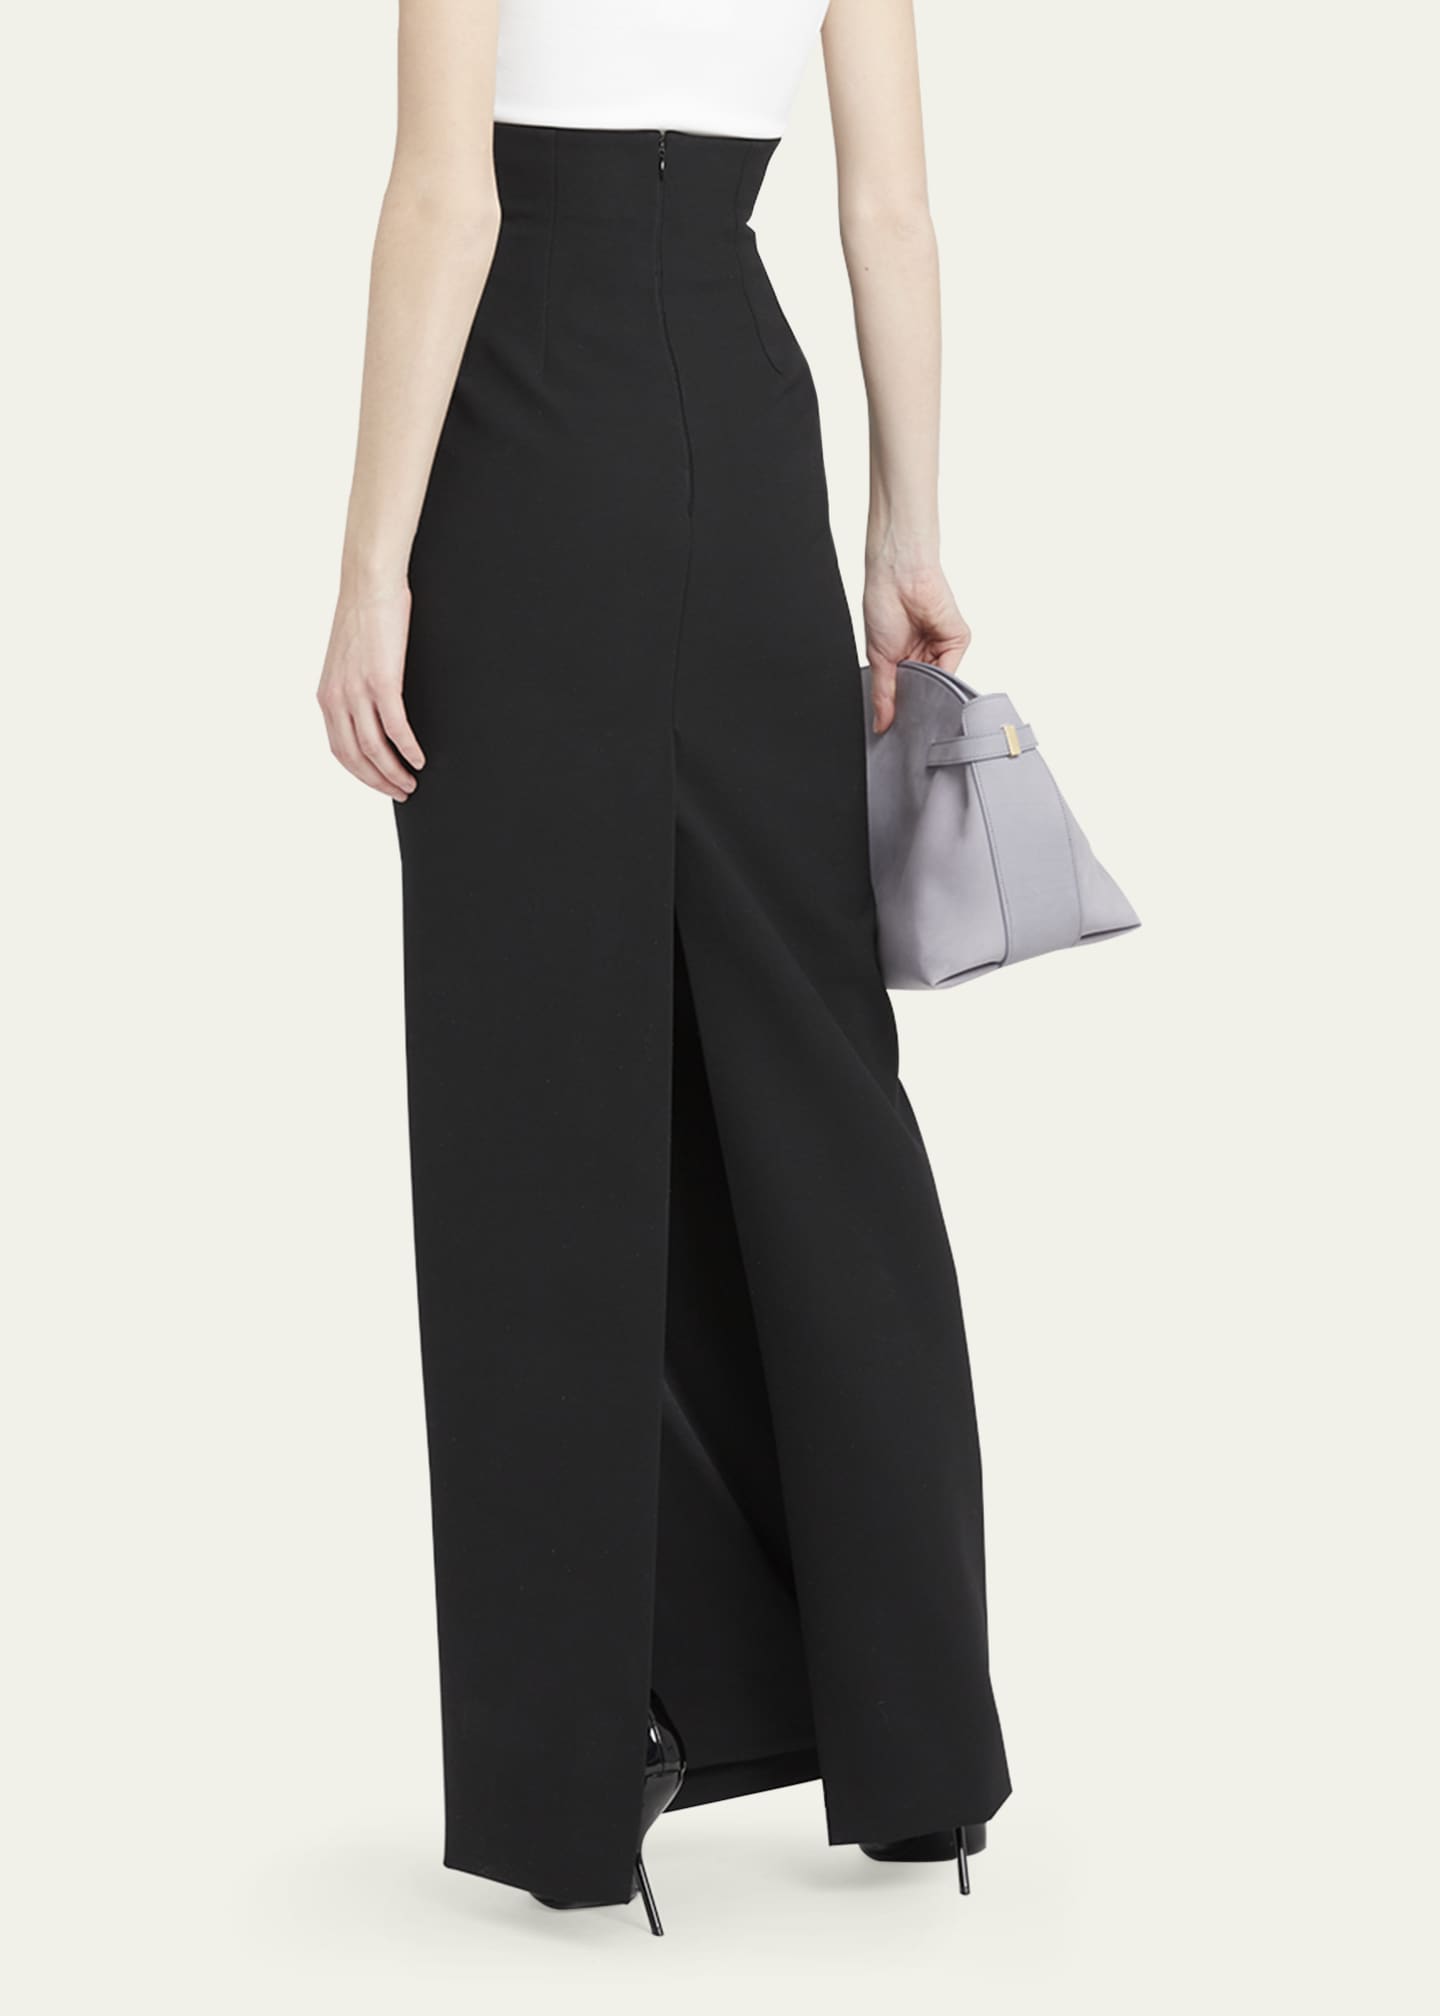 Ferragamo High-Waist Tailored Maxi Skirt - Bergdorf Goodman